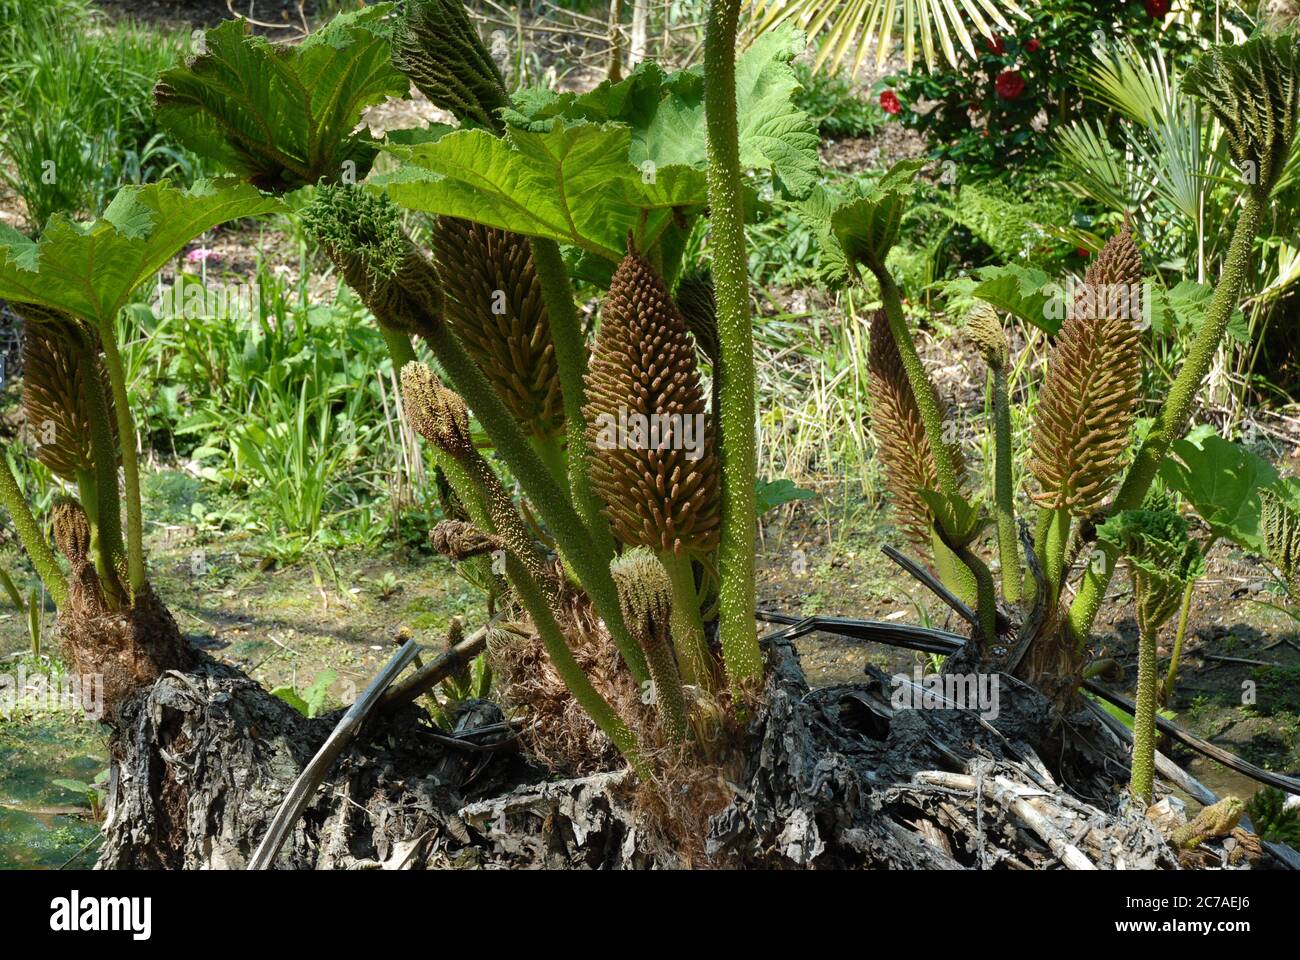 Giant rhubarb, also known as Gunnera manicata Stock Photo